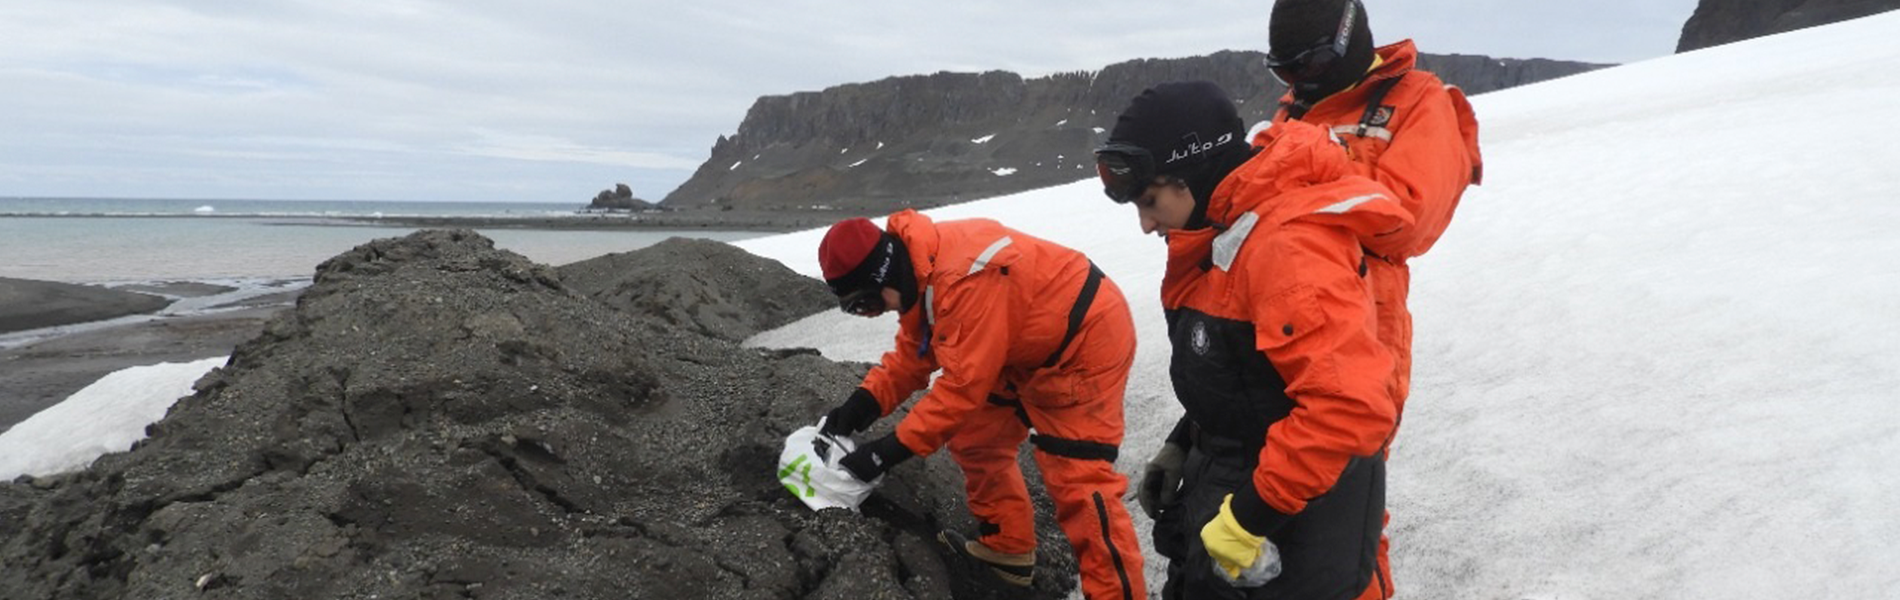 Foto de três pesquisadores vestidos de laranja examinando uma rocha em meio a neve.